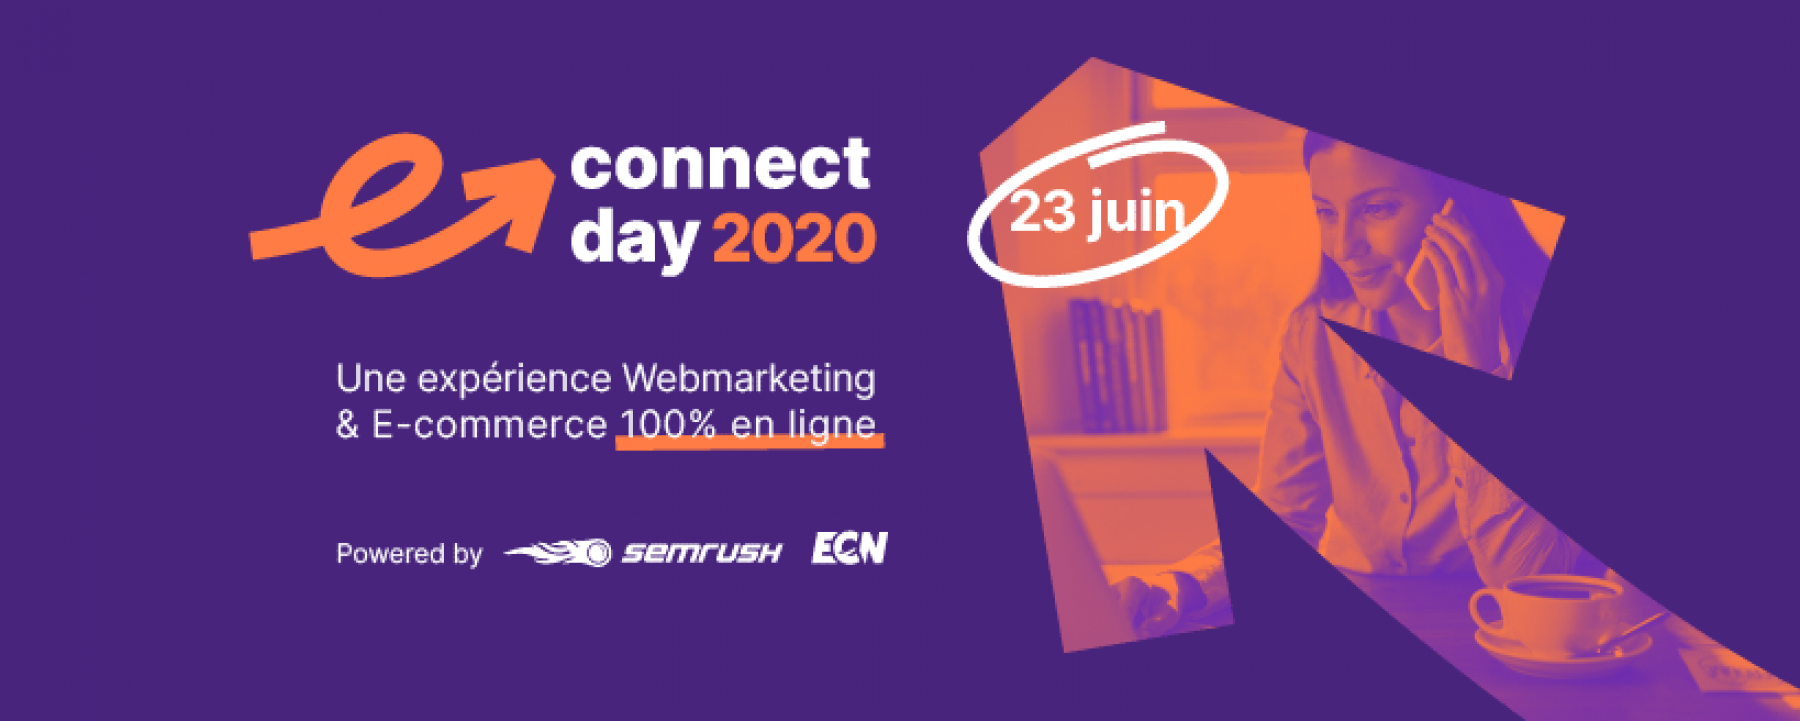 Webinar E-commerce day 2020, le 23 juin 2020, organisé par SEMrush et ECN 